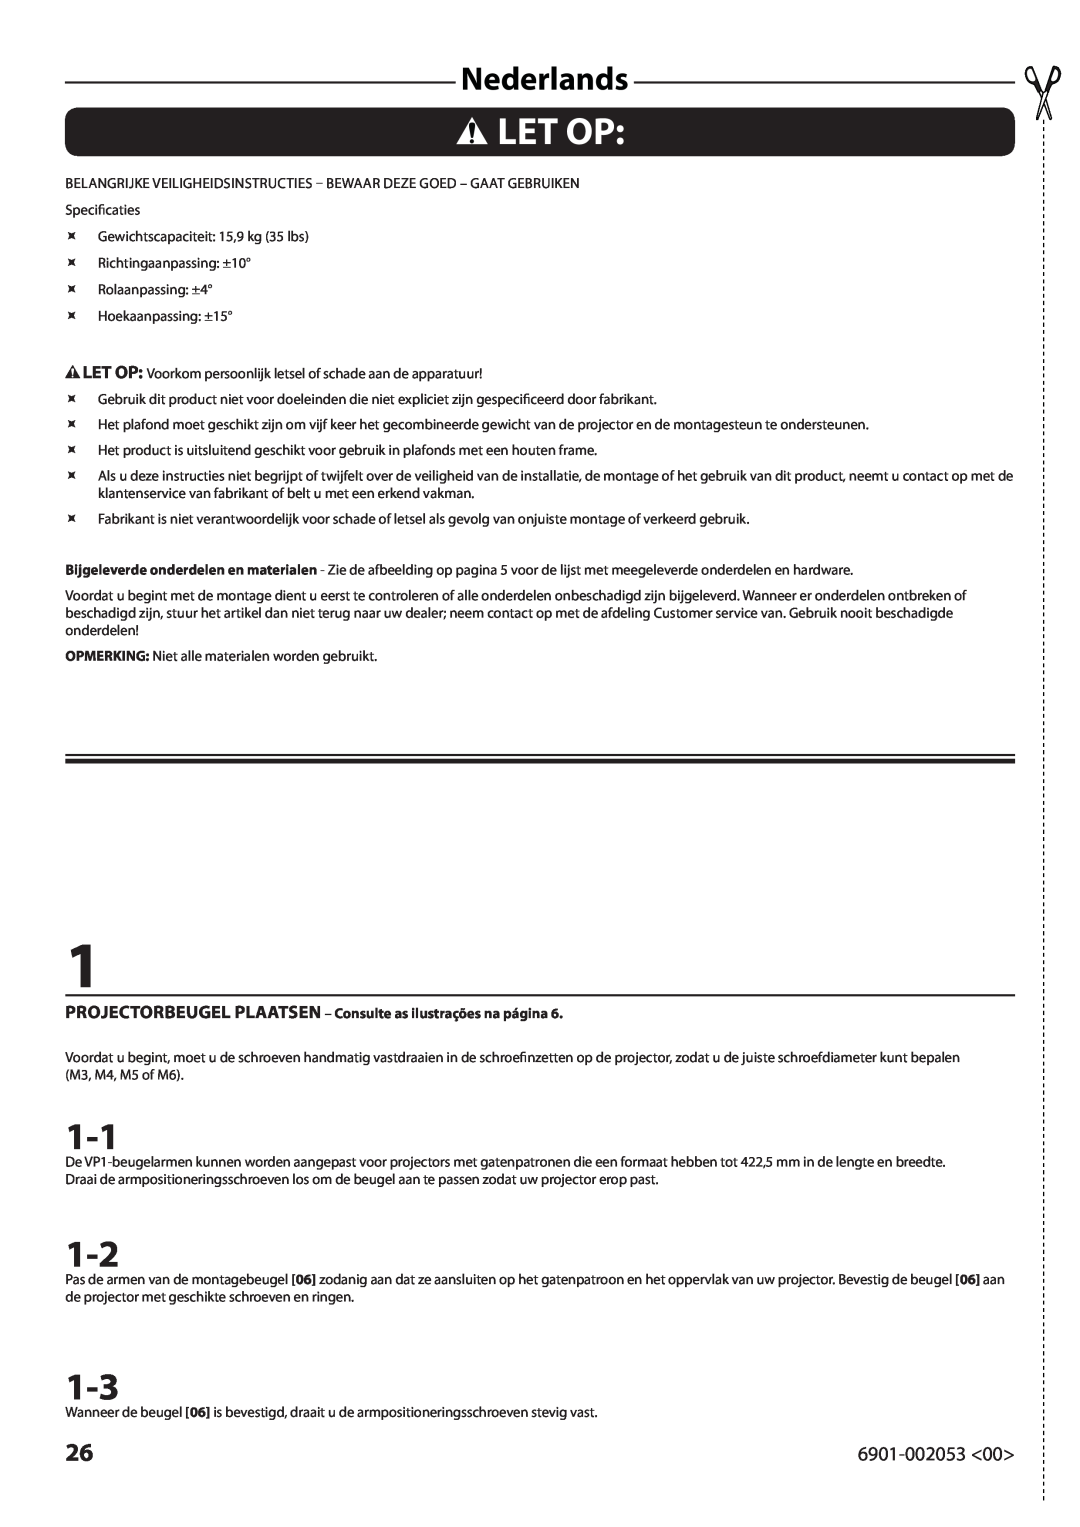 Sanus Systems VP1 manual Let Op, Nederlands, PROJECTORBEUGEL PLAATSEN - Consulte as ilustrações na página 